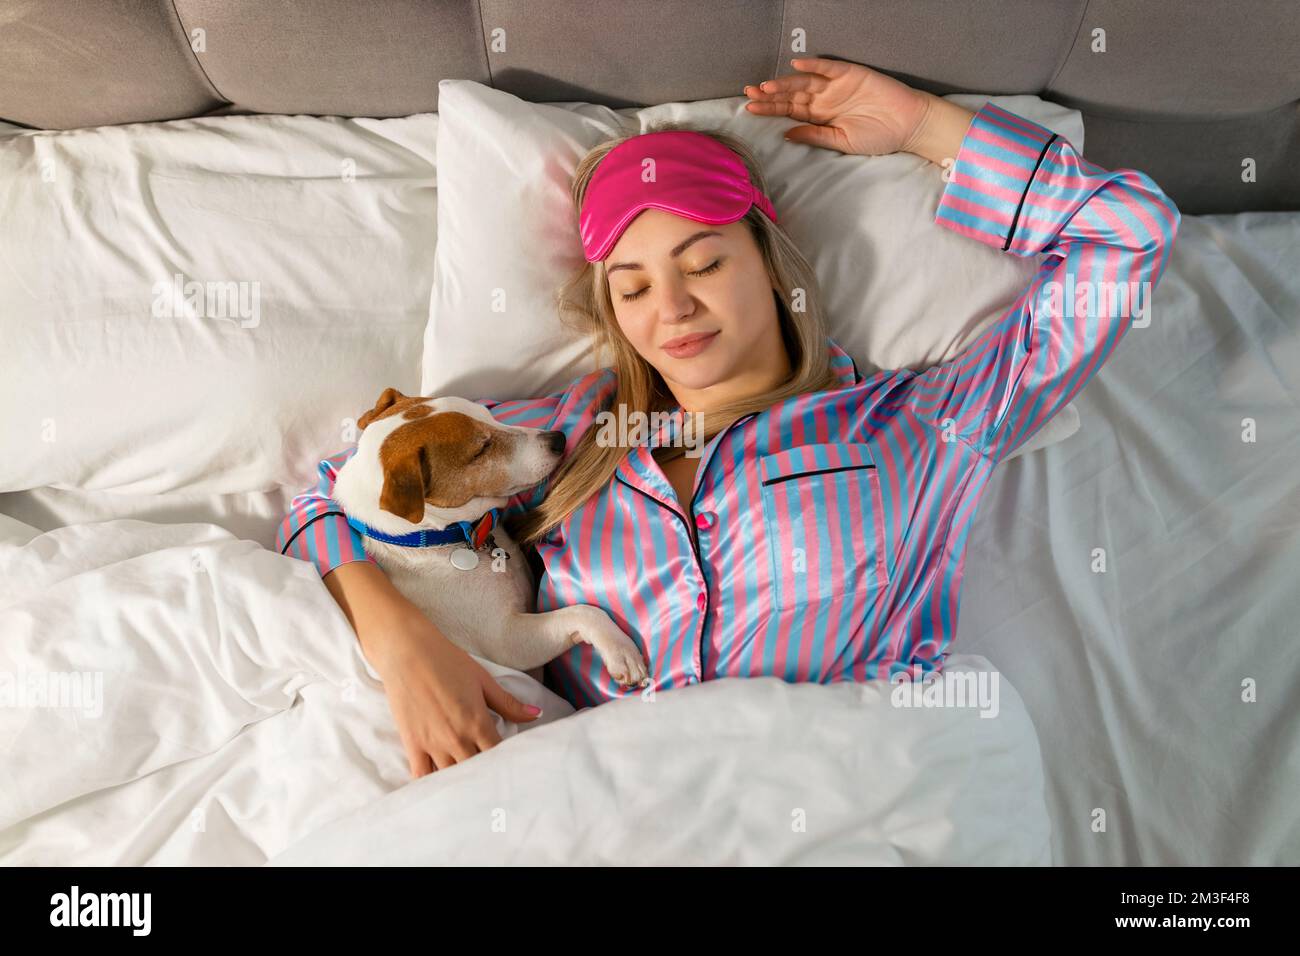 Eine attraktive junge Frau im Pyjama hält einen Hund, während sie auf einem Bett liegt Stockfoto